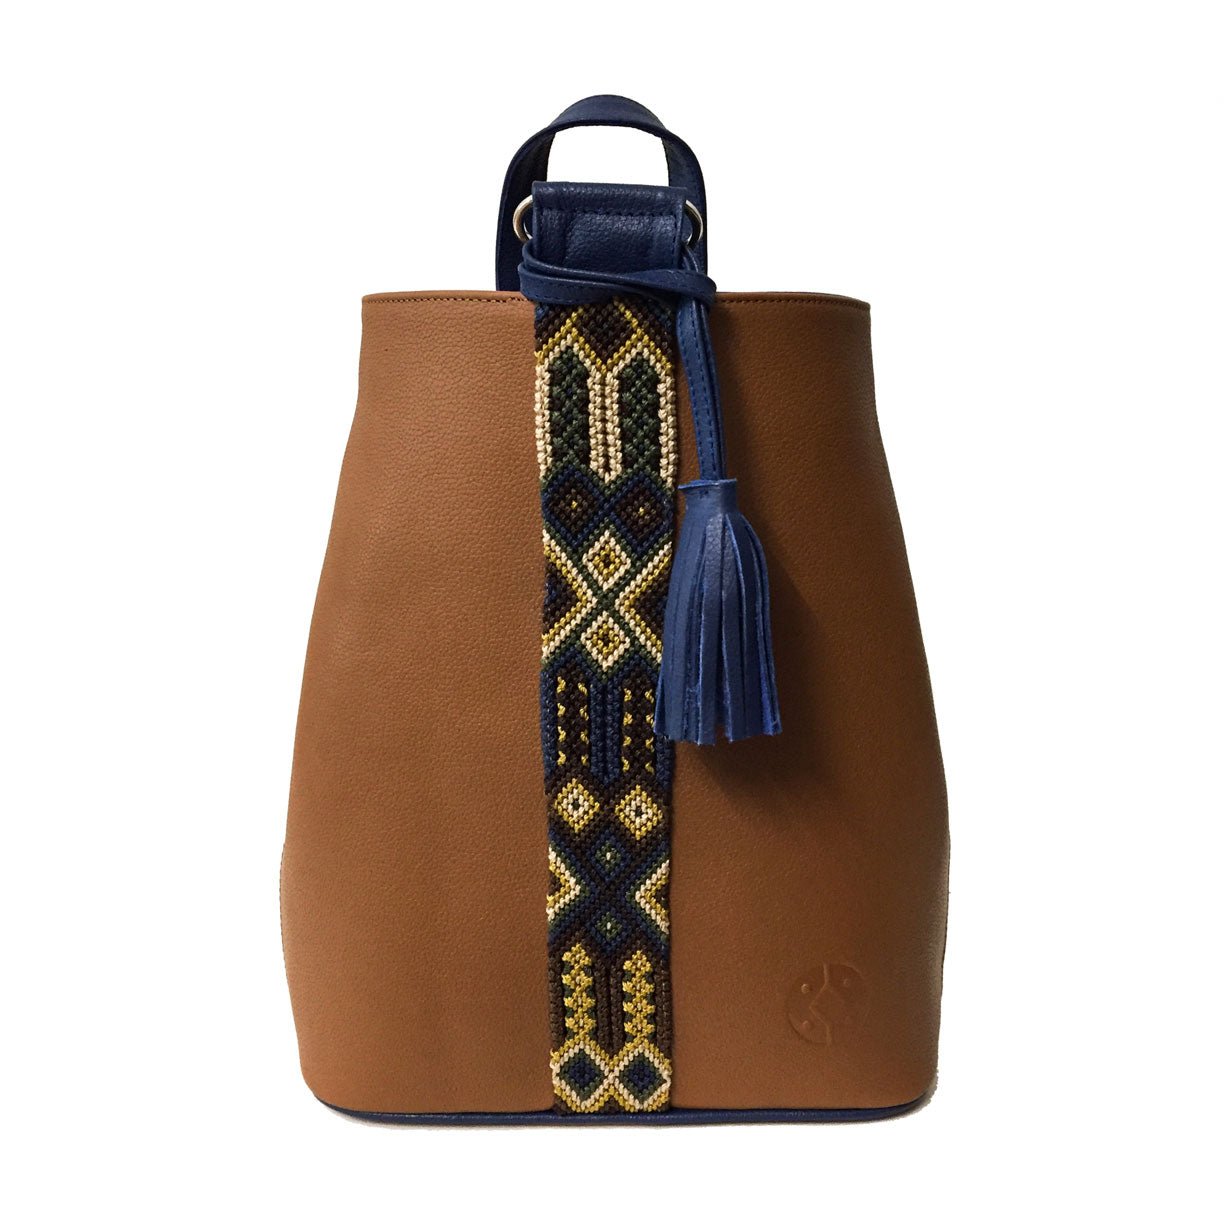 Mochila Backpack de piel para mujer color camello con cinta artesanal Chiapaneca